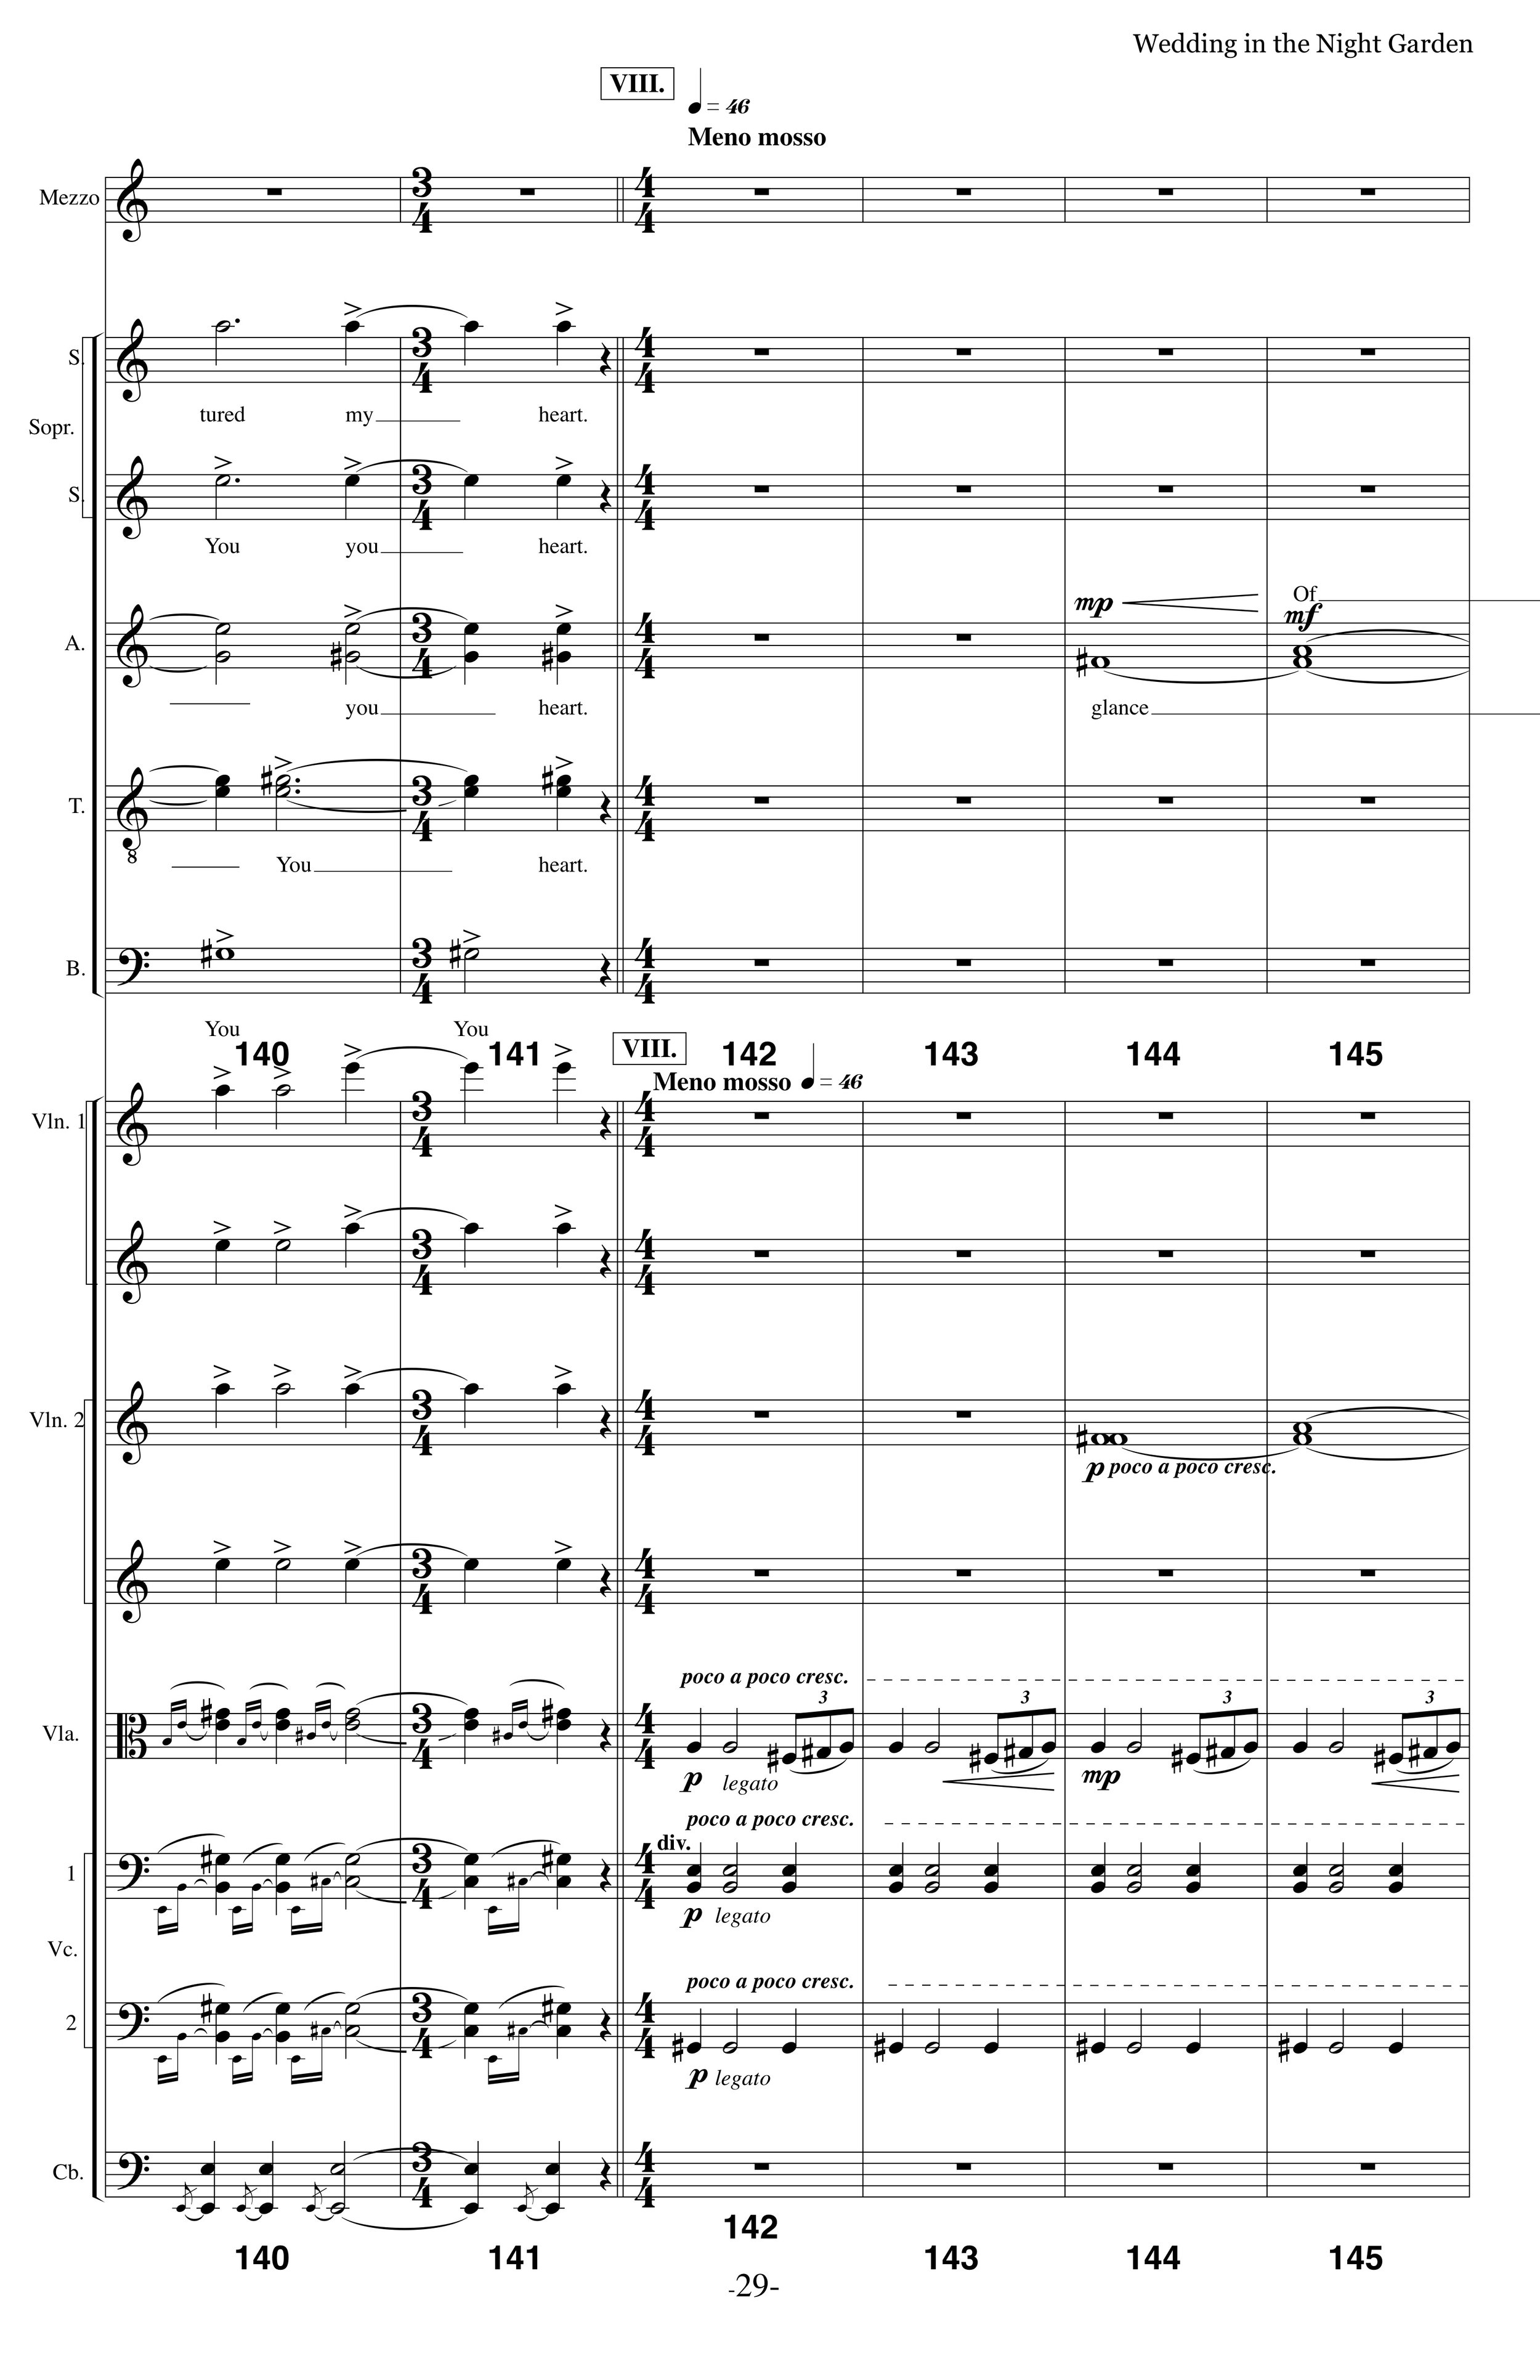 WITNG_MS Strings Choir p29.jpg